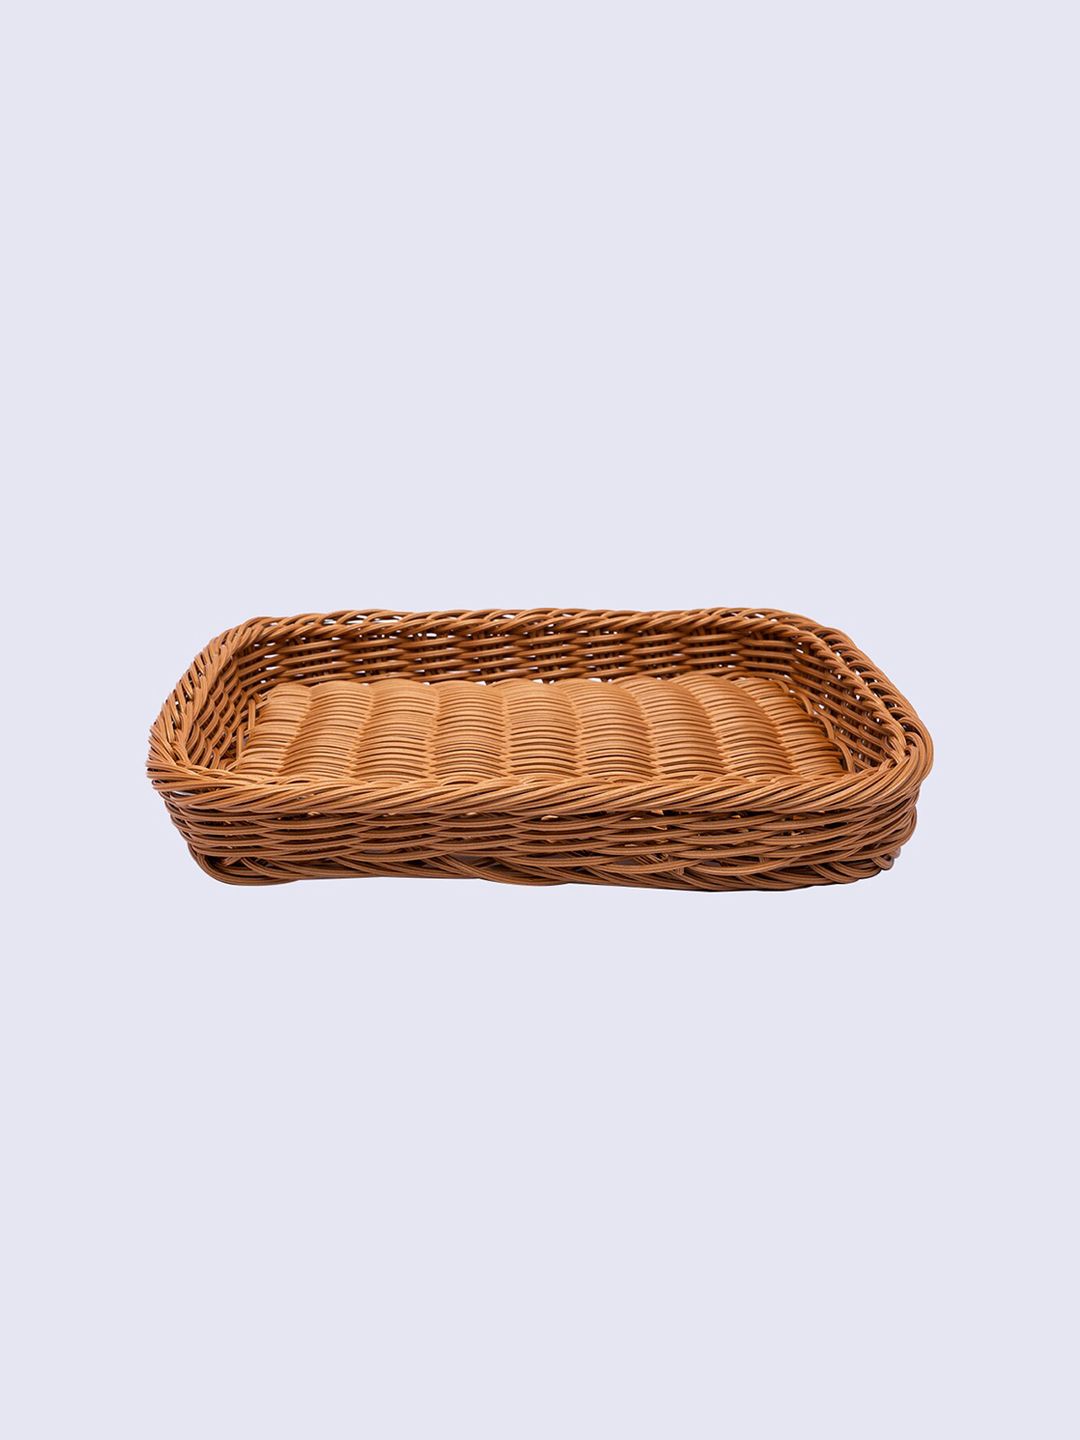 MARKET99 Tan-Brown Storage Basket Price in India